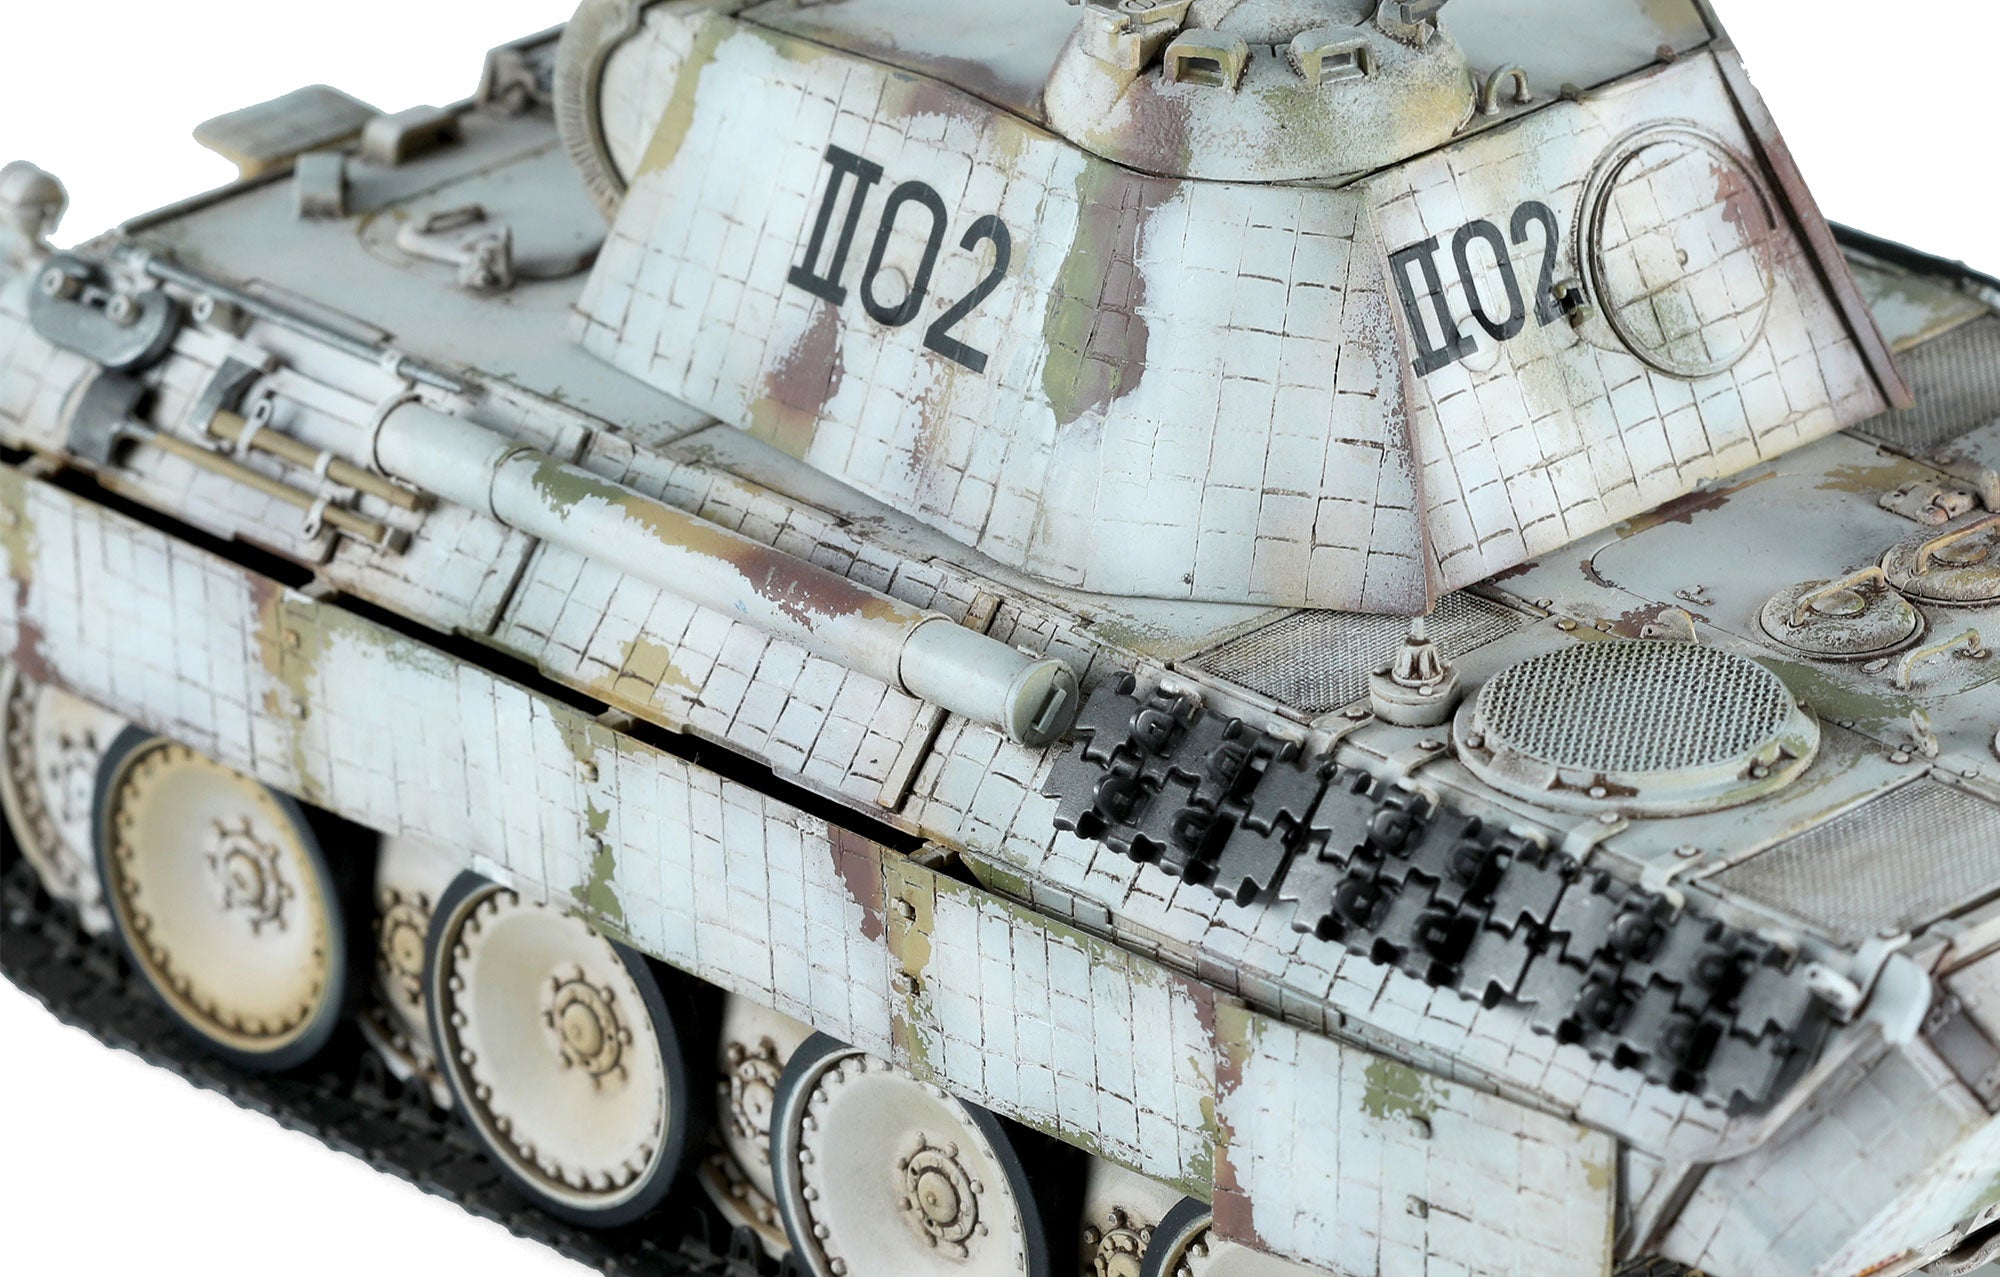 Meng: 1/35 Sd.Kfz.171 Panther Ausf.A Early, German Medium Tank